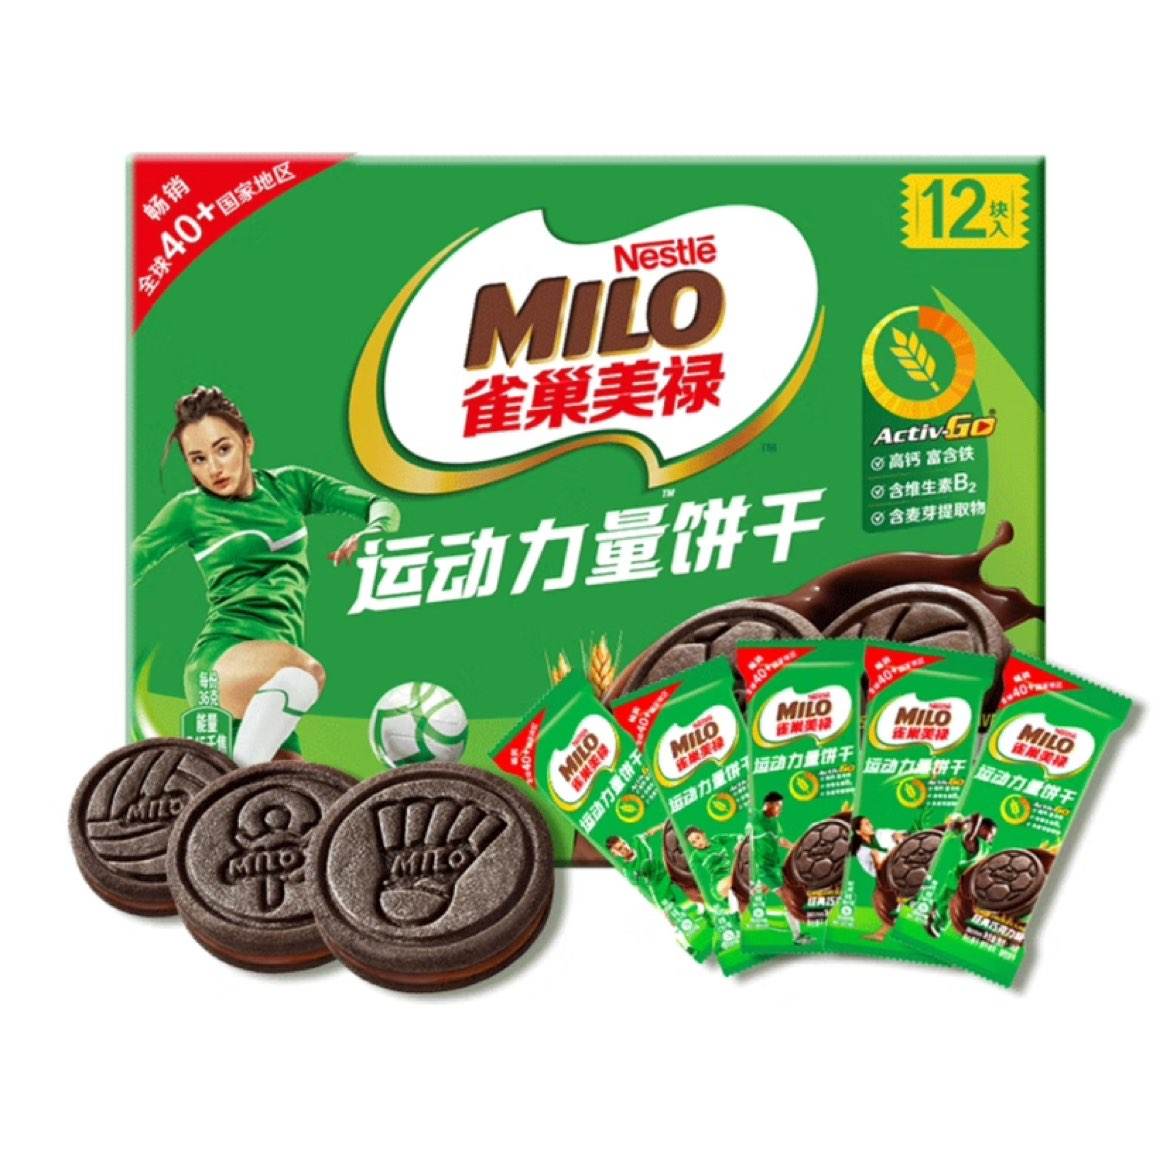 徐福记美禄Milo运动力量夹心饼干经典巧克力味108g*2盒(买1赠1) 4.9元